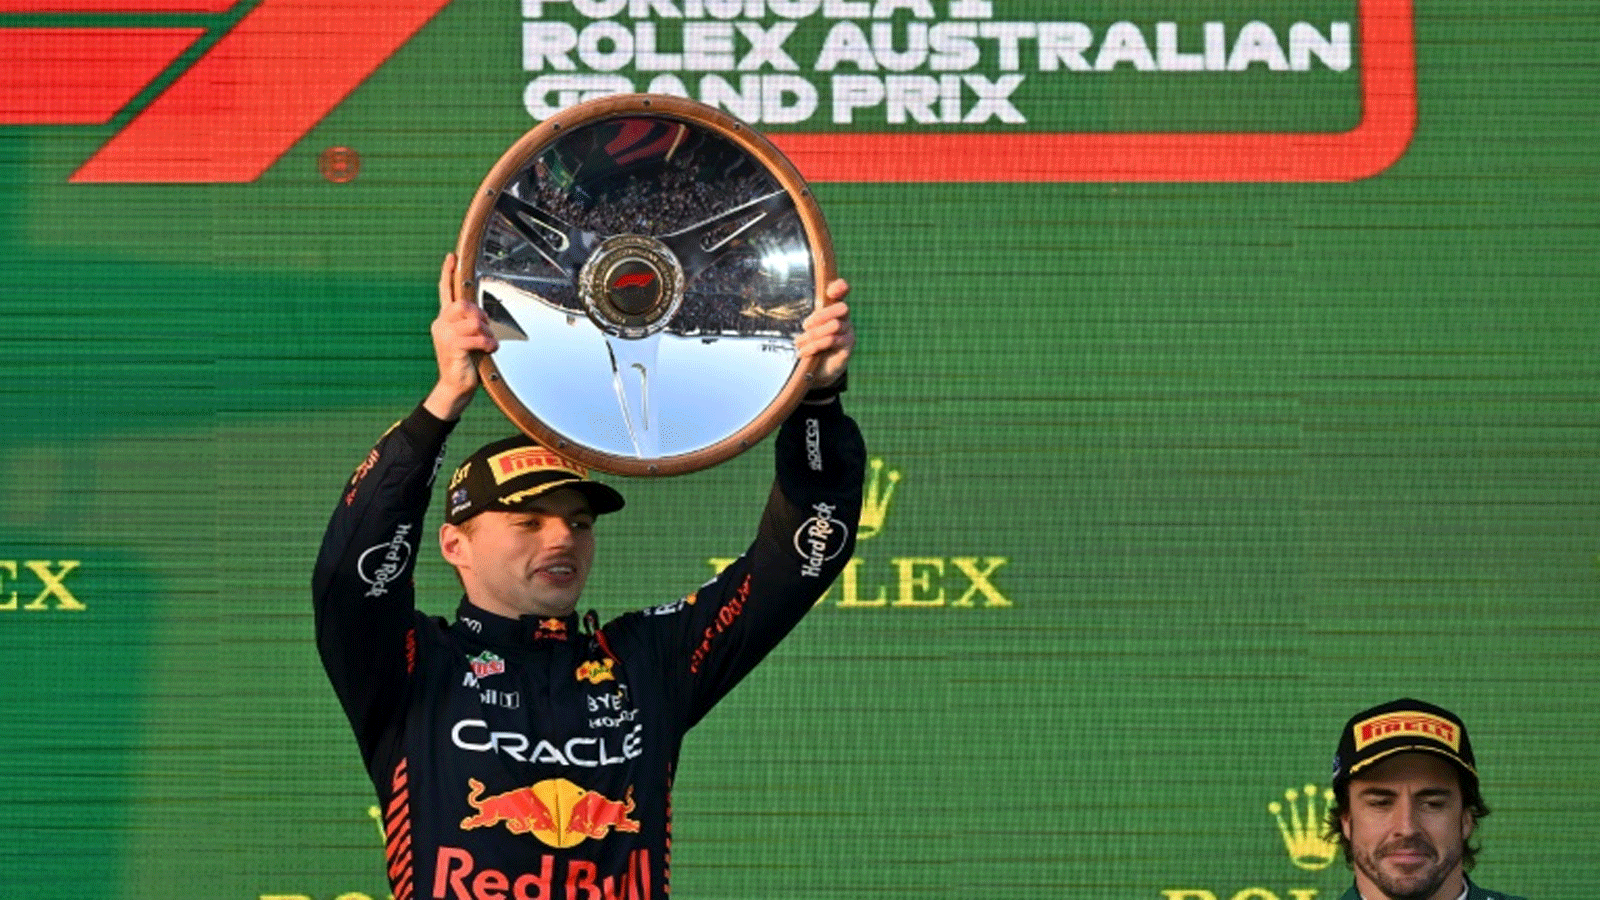 سائق ريد بول الهولندي ماكس فيرستابن يرفع كأس سباق جائزة أستراليا الكبرى بالفورمولا 1 في 2 نيسان/أبريل 2023